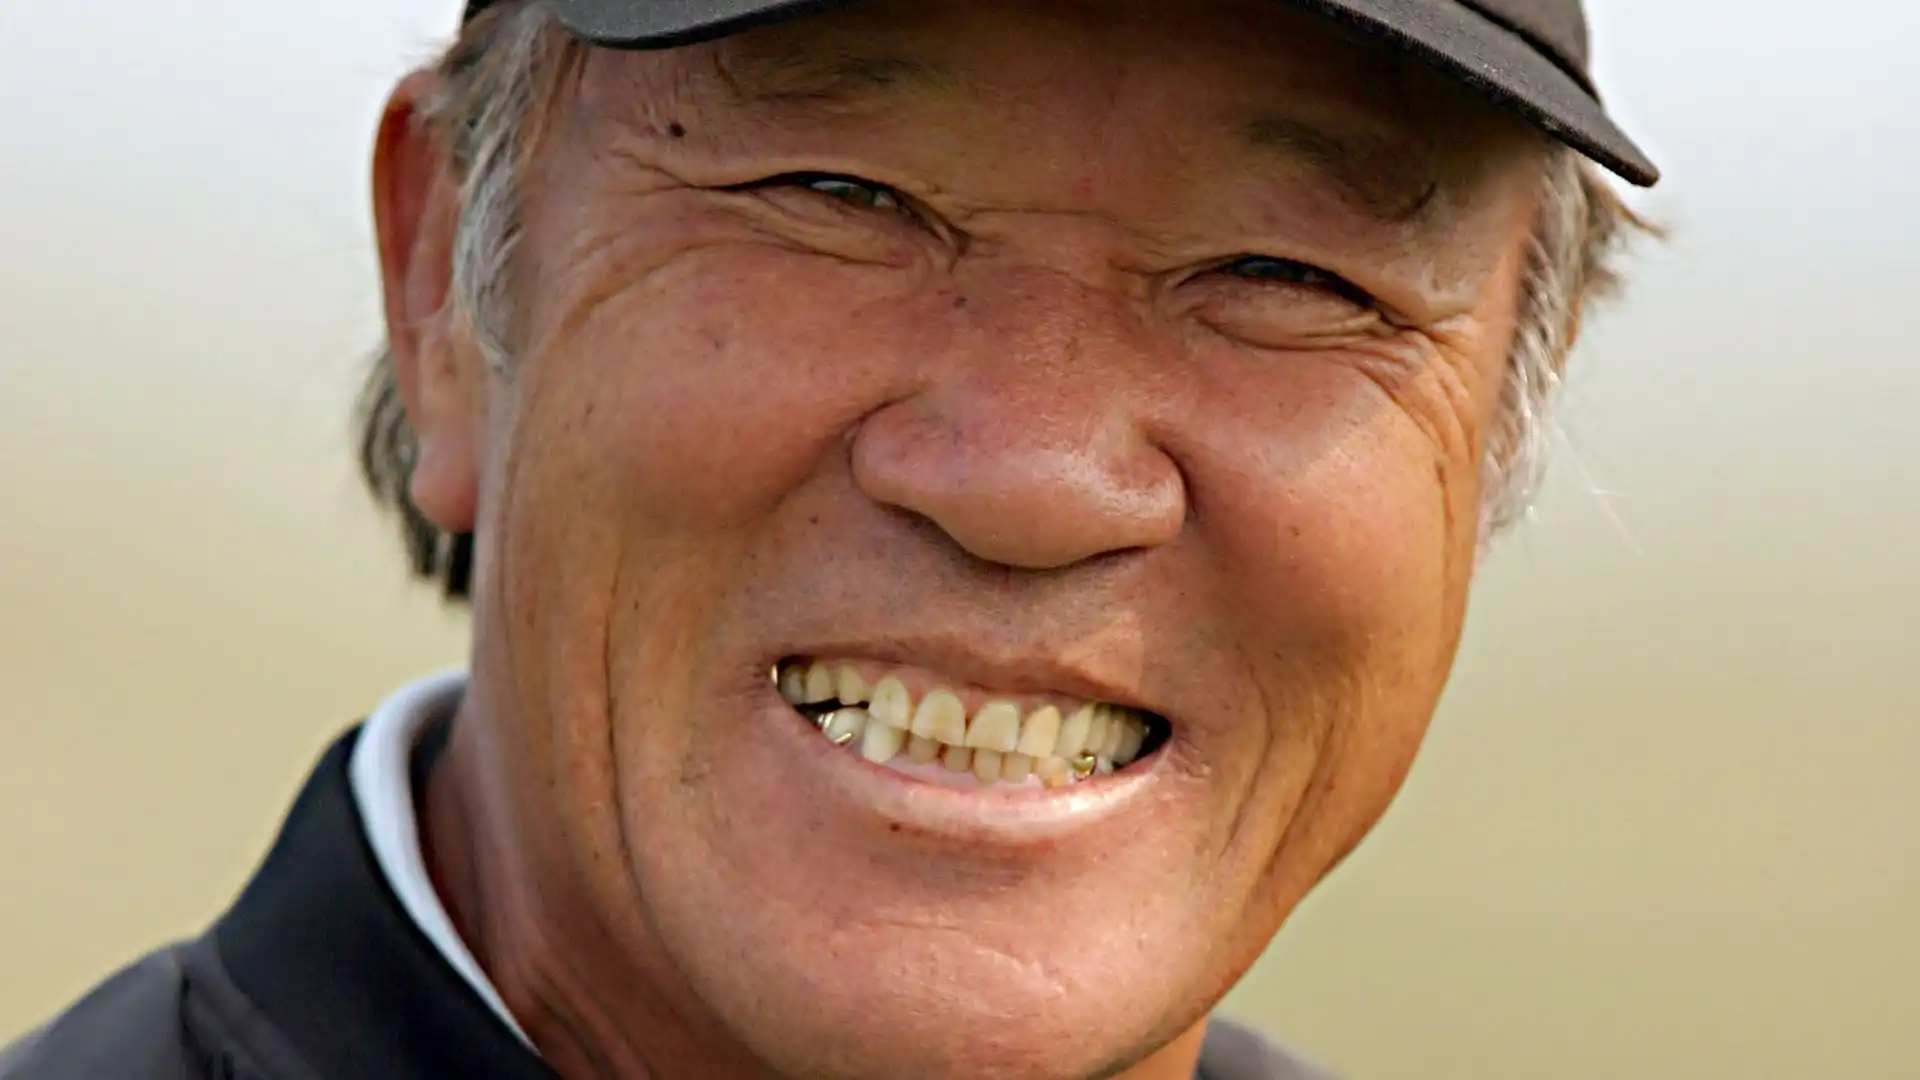 Isao Aoki: premi vinti nel PGA Tour $960,571. Eletto nella World Golf Hall of Fame, oltre 80 tornei vinti in carriera